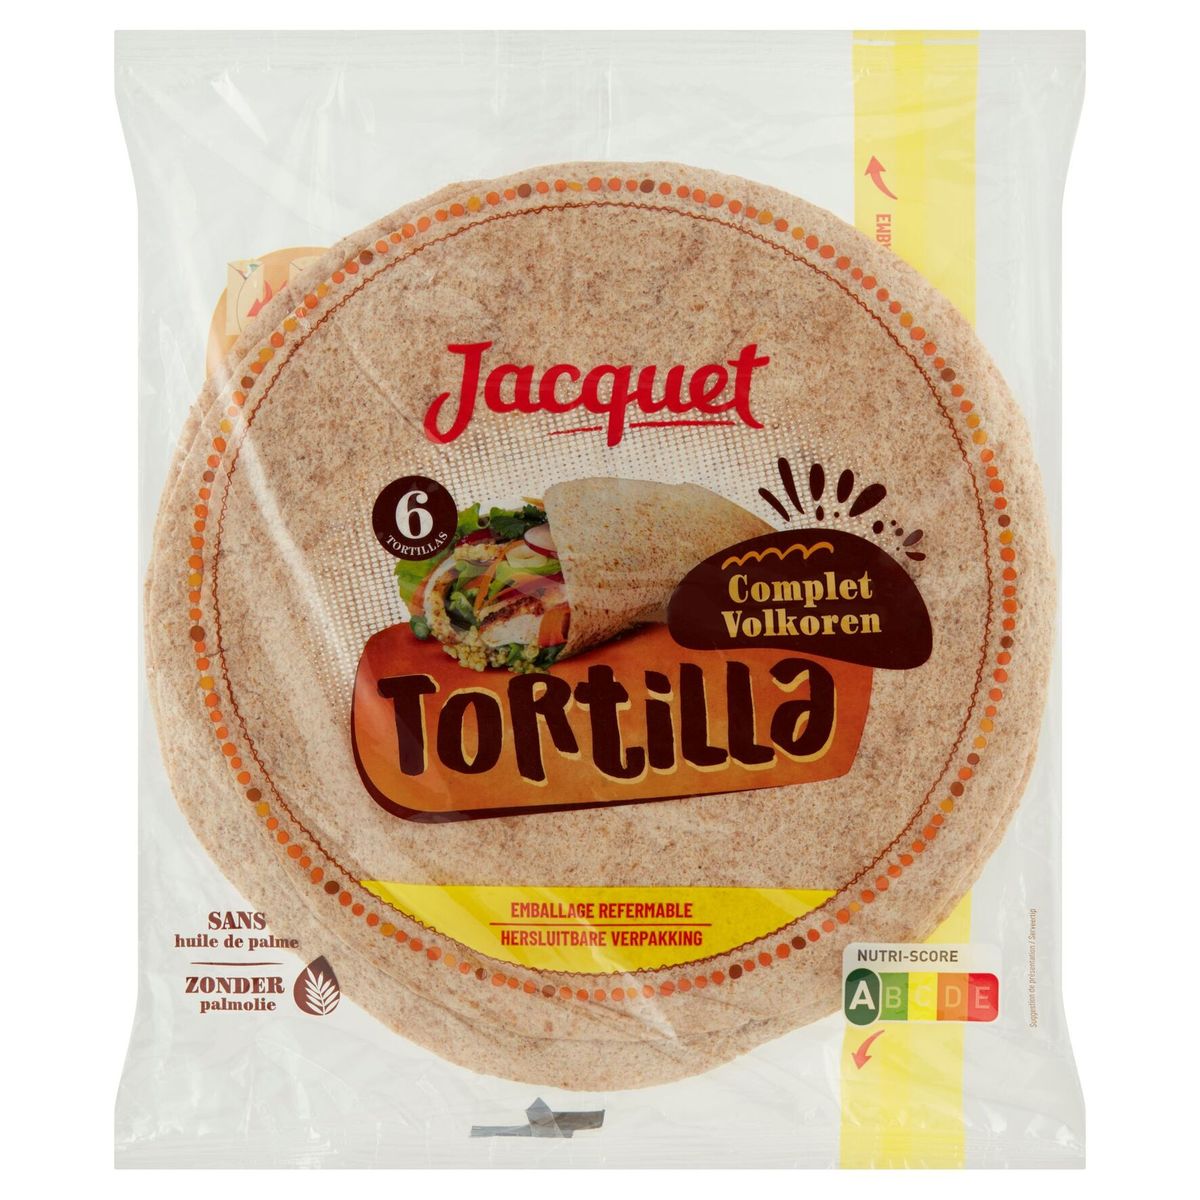 Jacquet Tortilla Volkoren Tortilla 6 Stuks 370 g